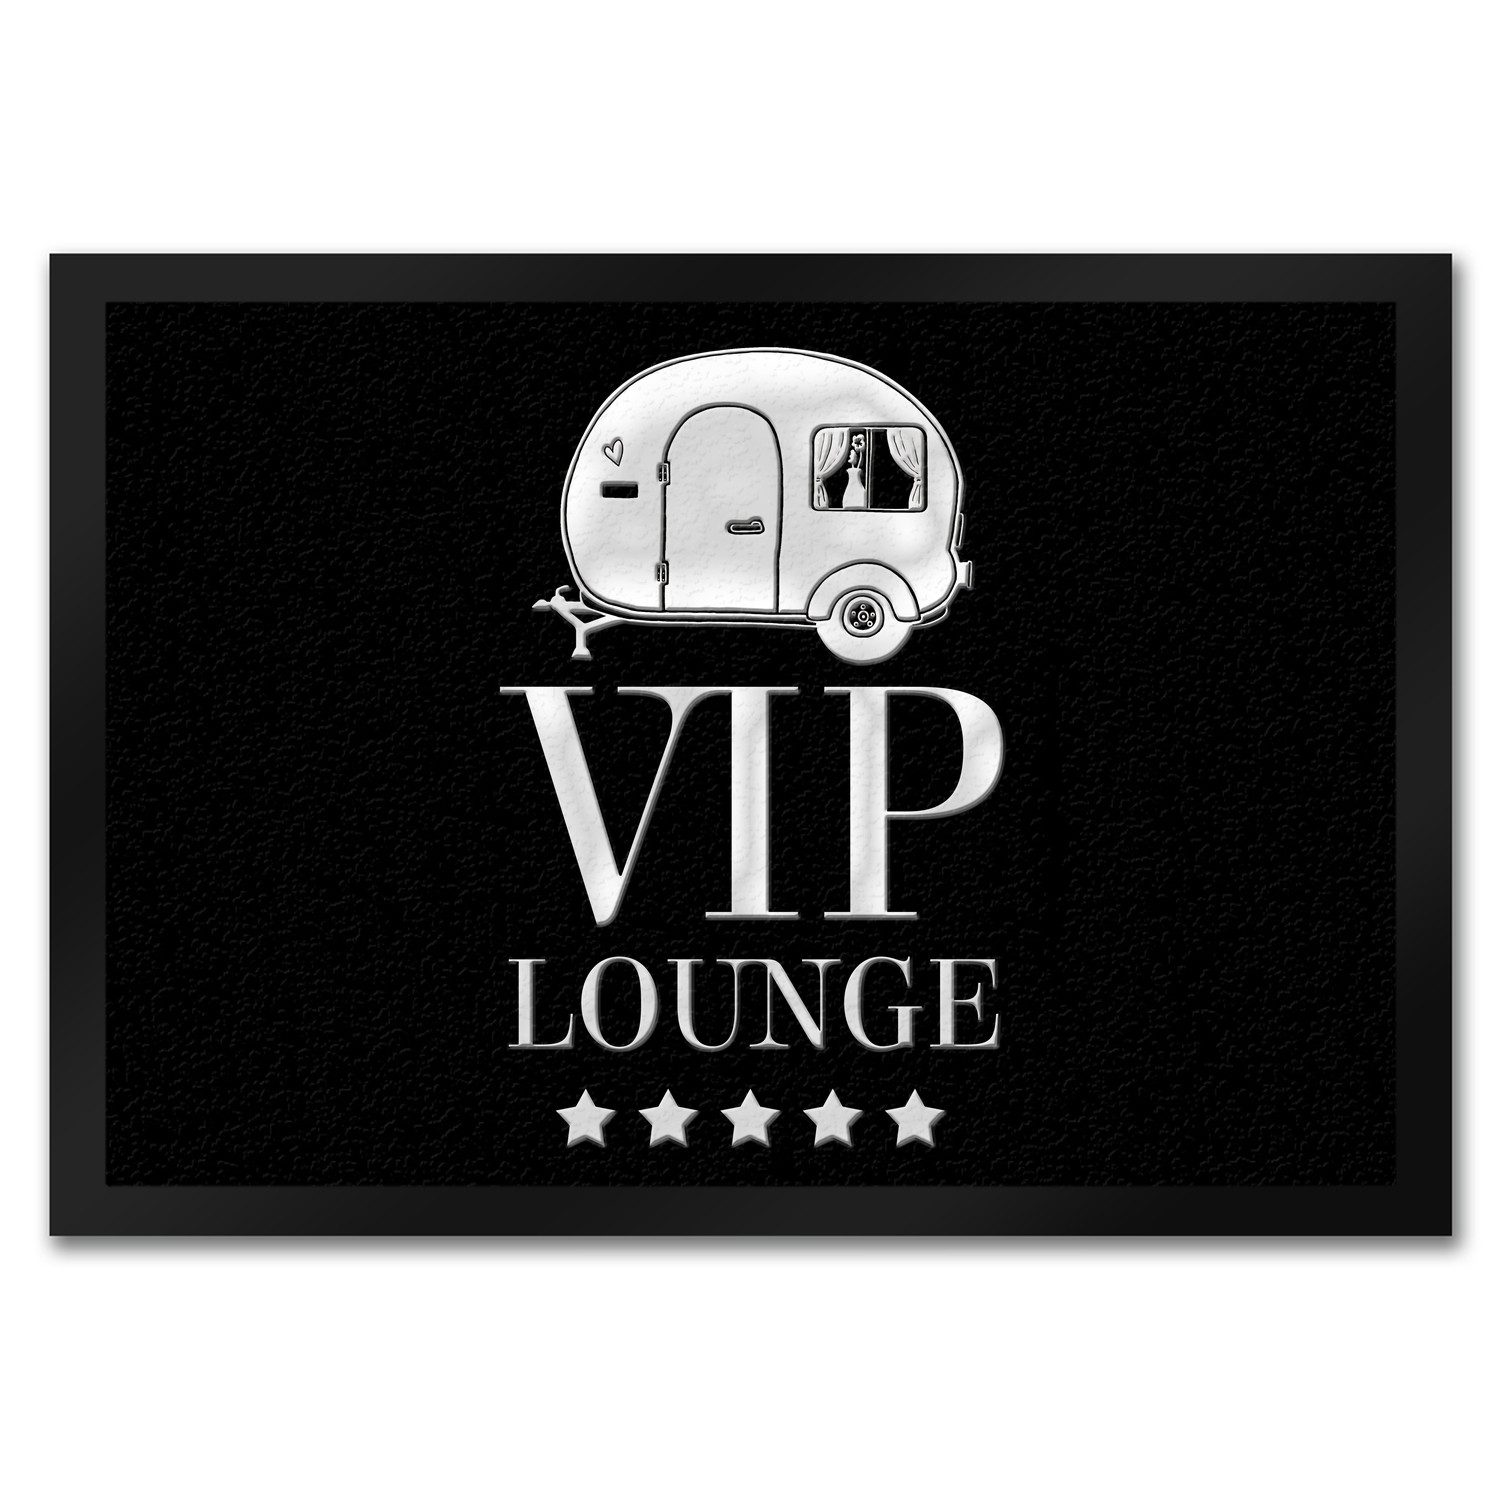 Fußmatte VIP Lounge Fußmatte mit Wohnwagen Motiv Wohnmobil edel Gast Besuch, speecheese